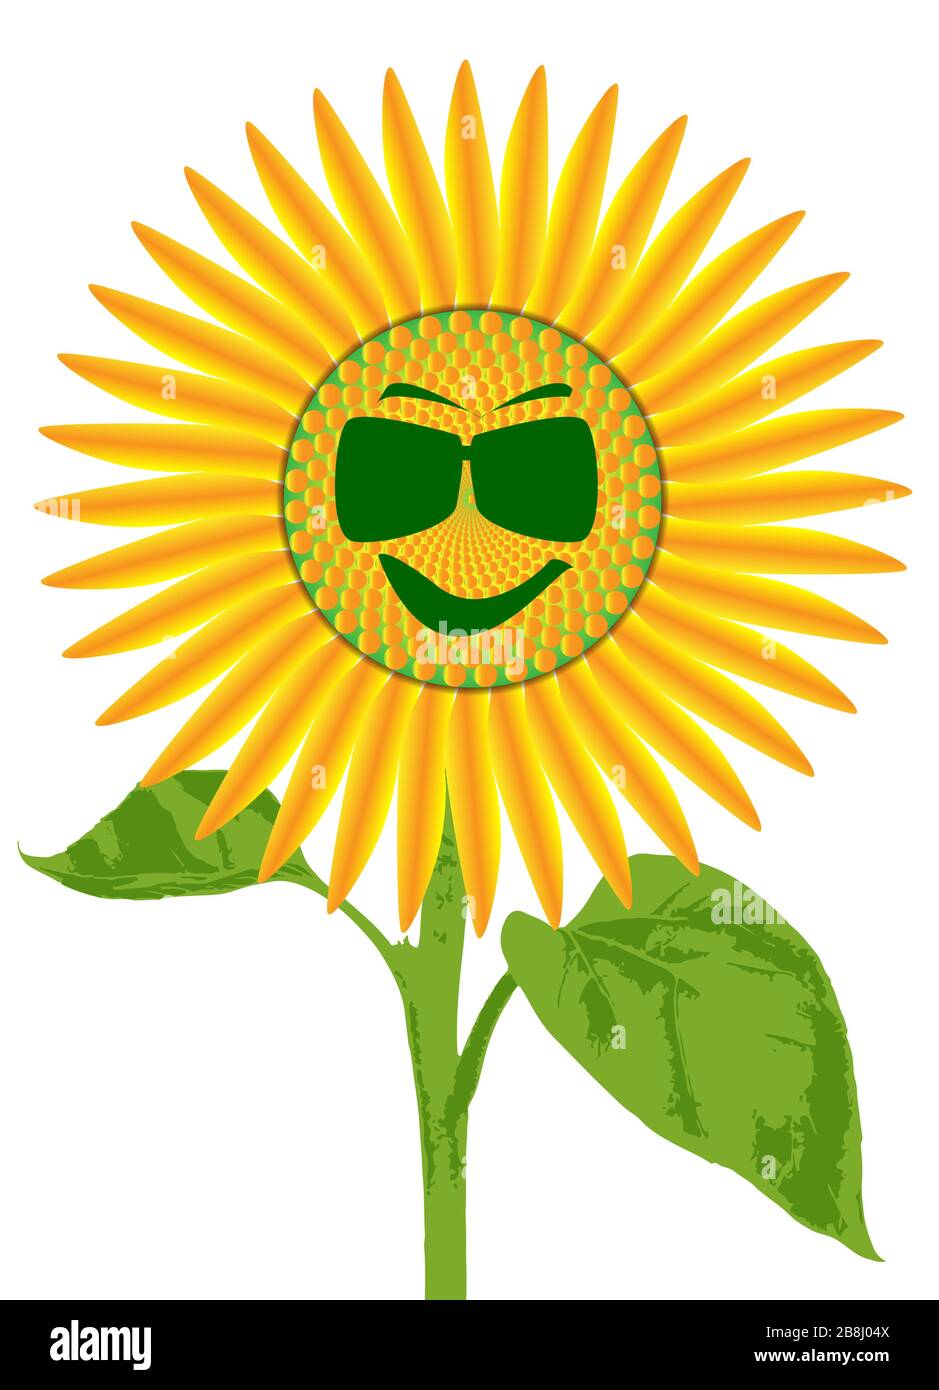 Der Kopf einer großen Sonnenblumenpflanze isoliert auf weißem Grund mit einem Smiley-Gesicht mit Sonnenbrille Stock Vektor